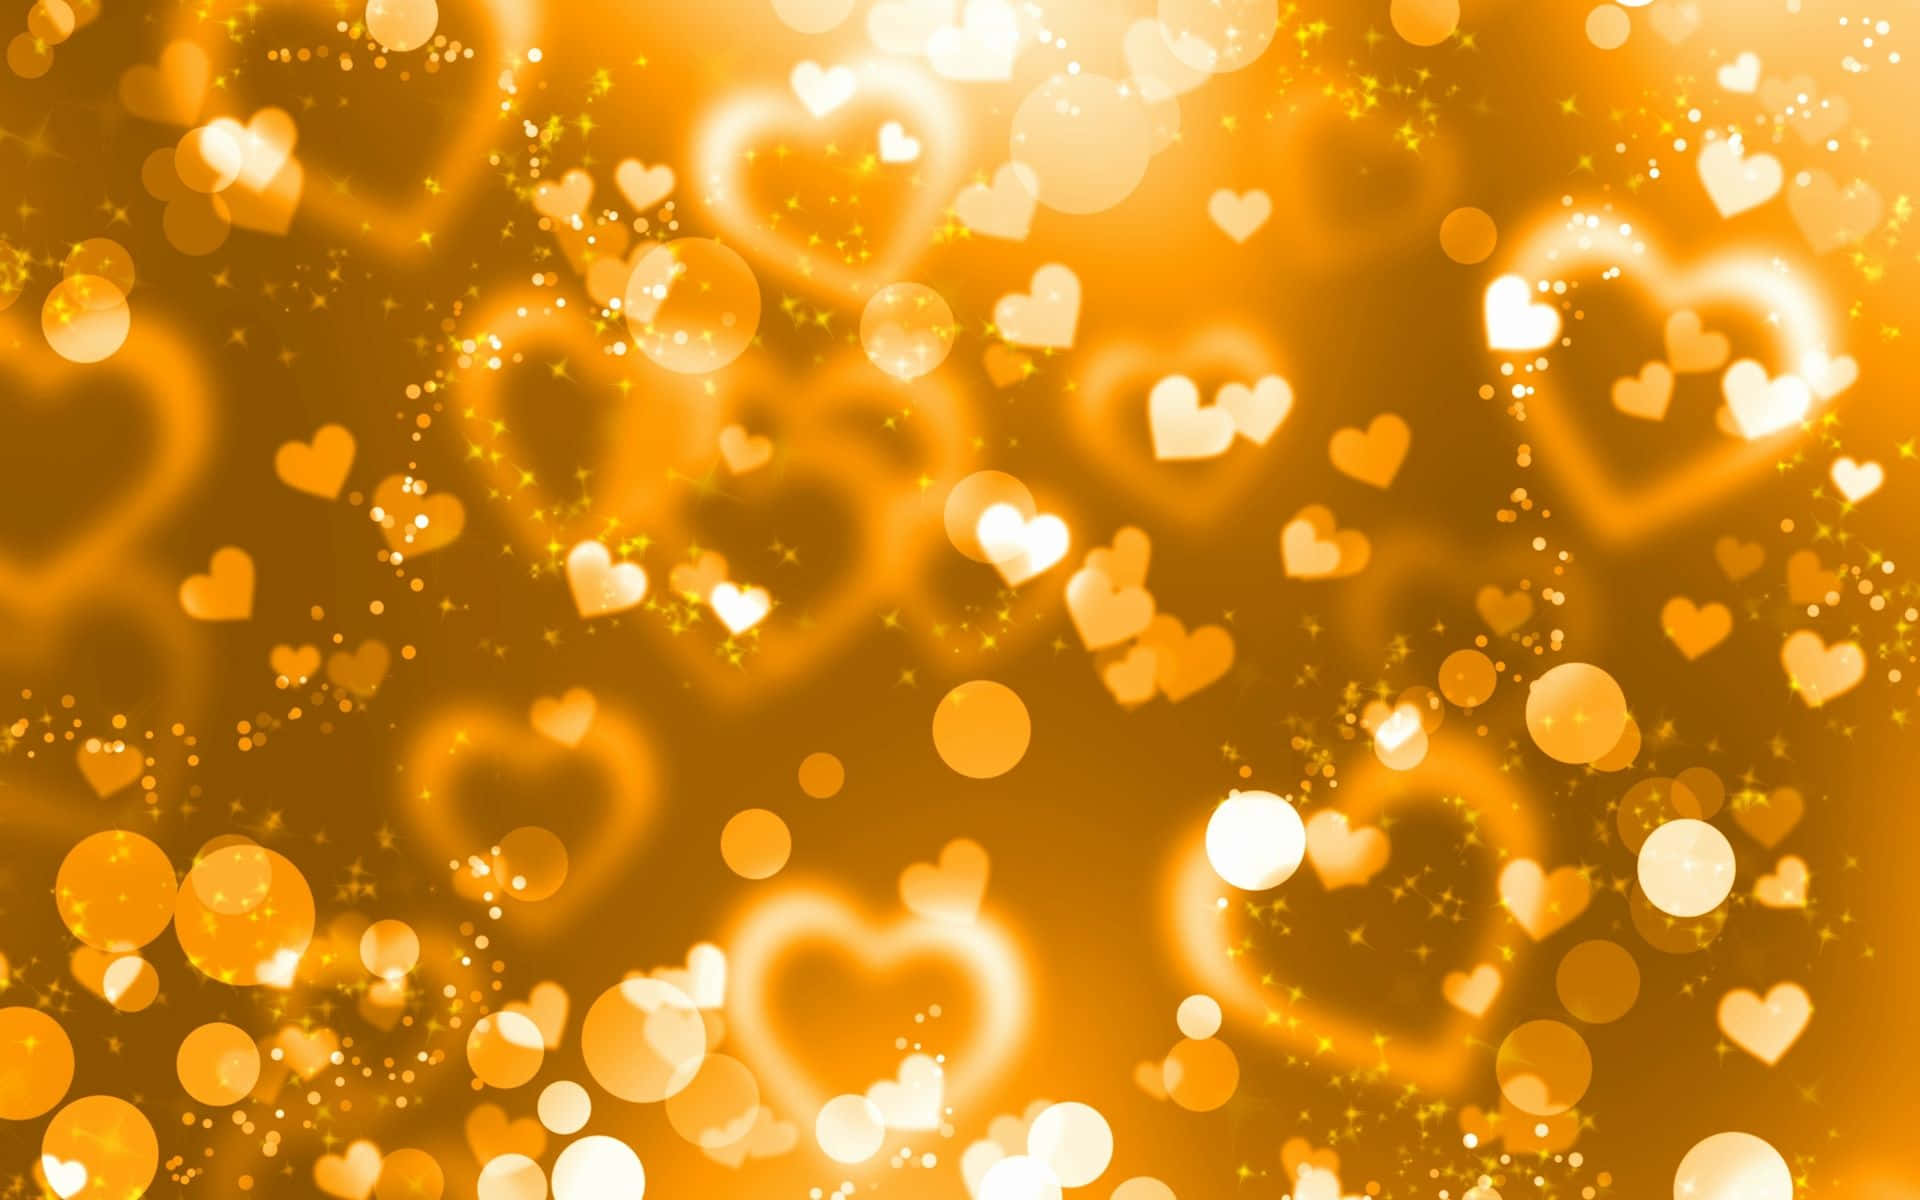 Corazonesbrillantes De Color Naranja, Dorado Y Amarillo. Fondo de pantalla